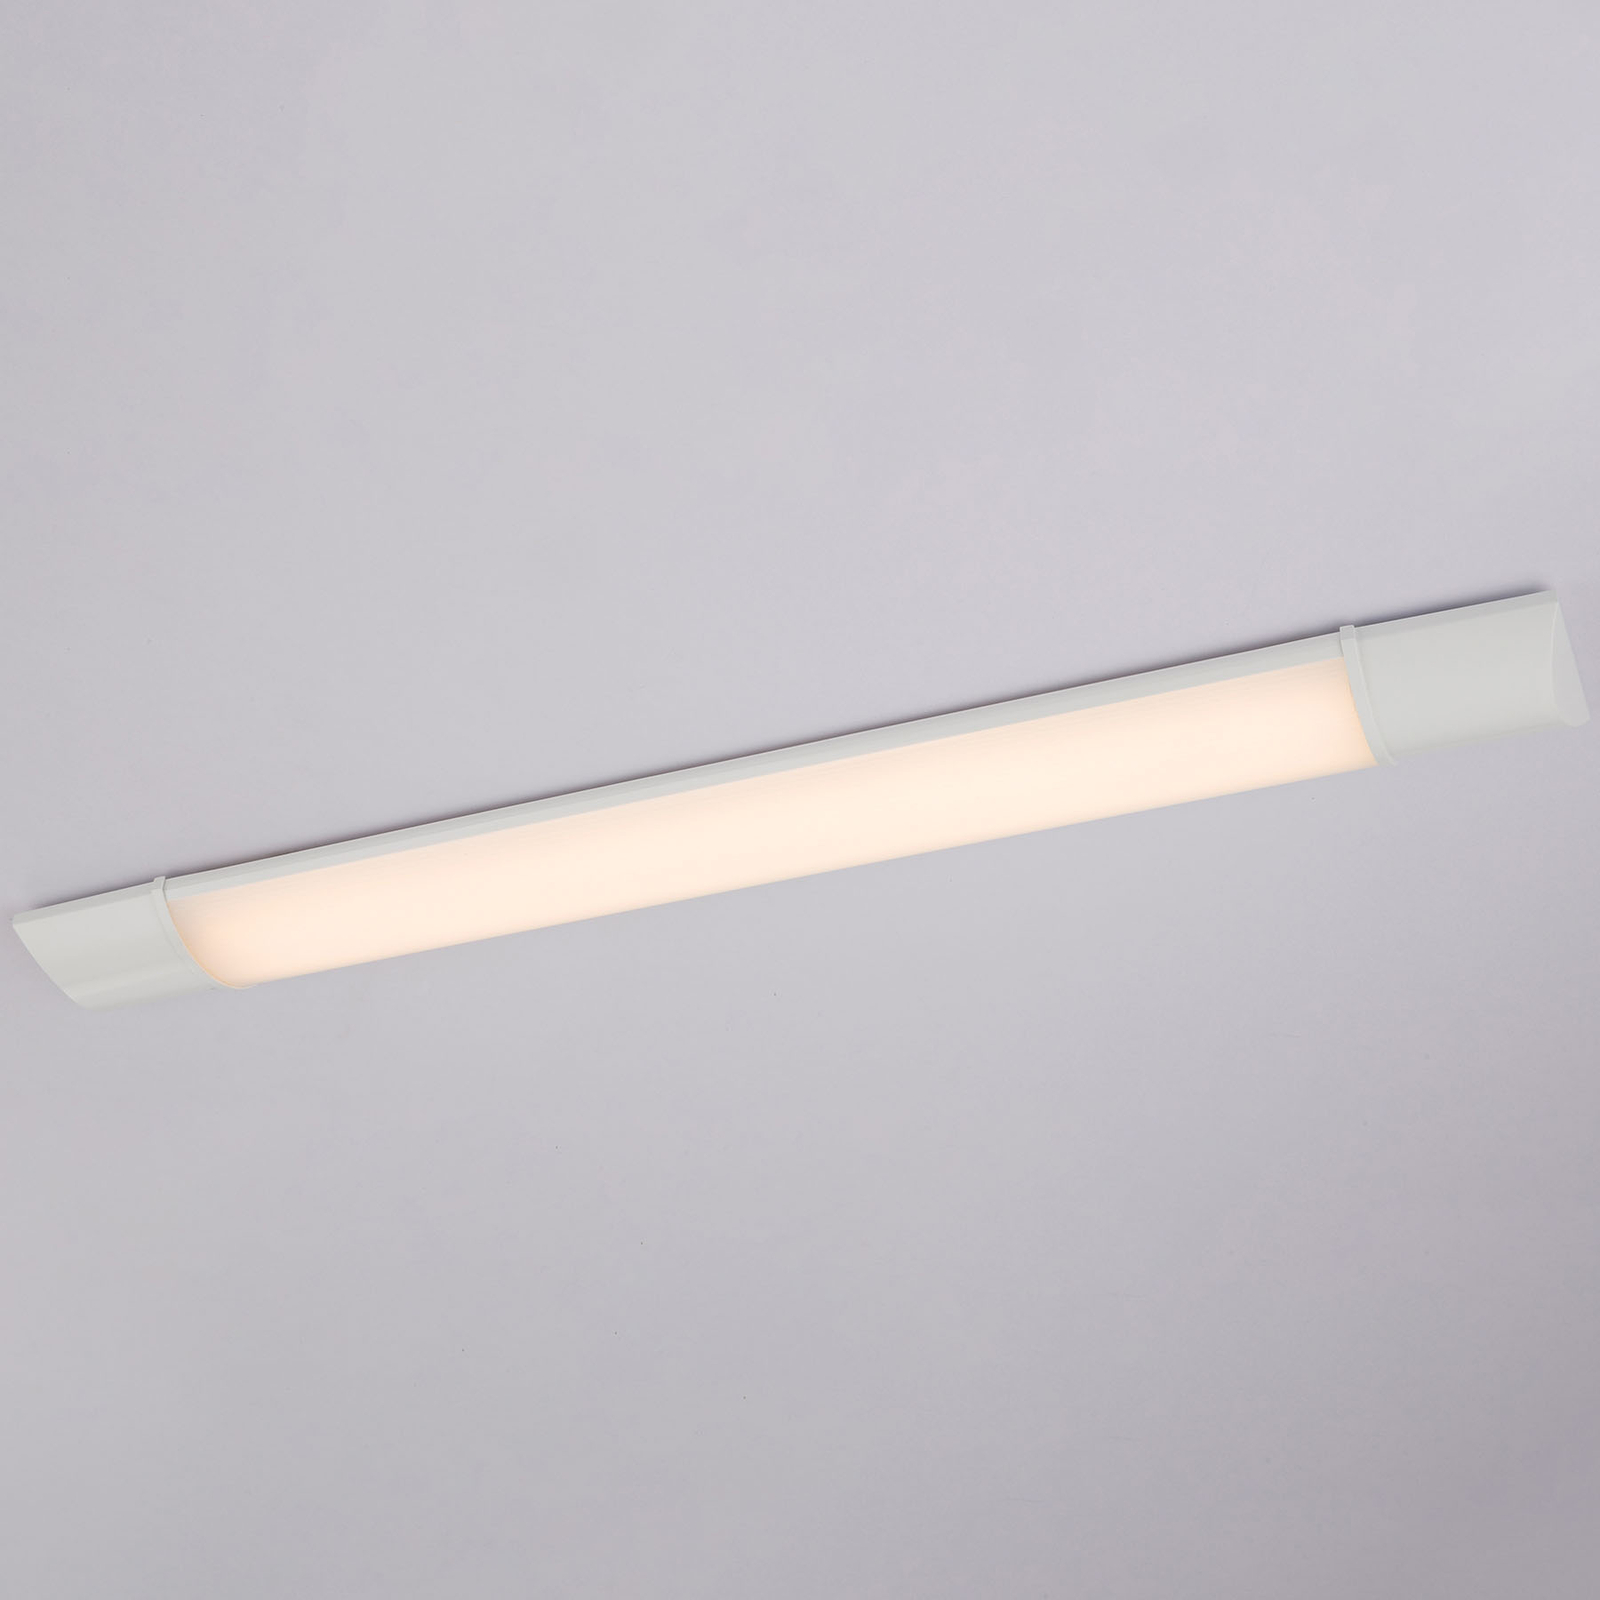 LED under-cabinet light Obara, IP20, 60 cm long